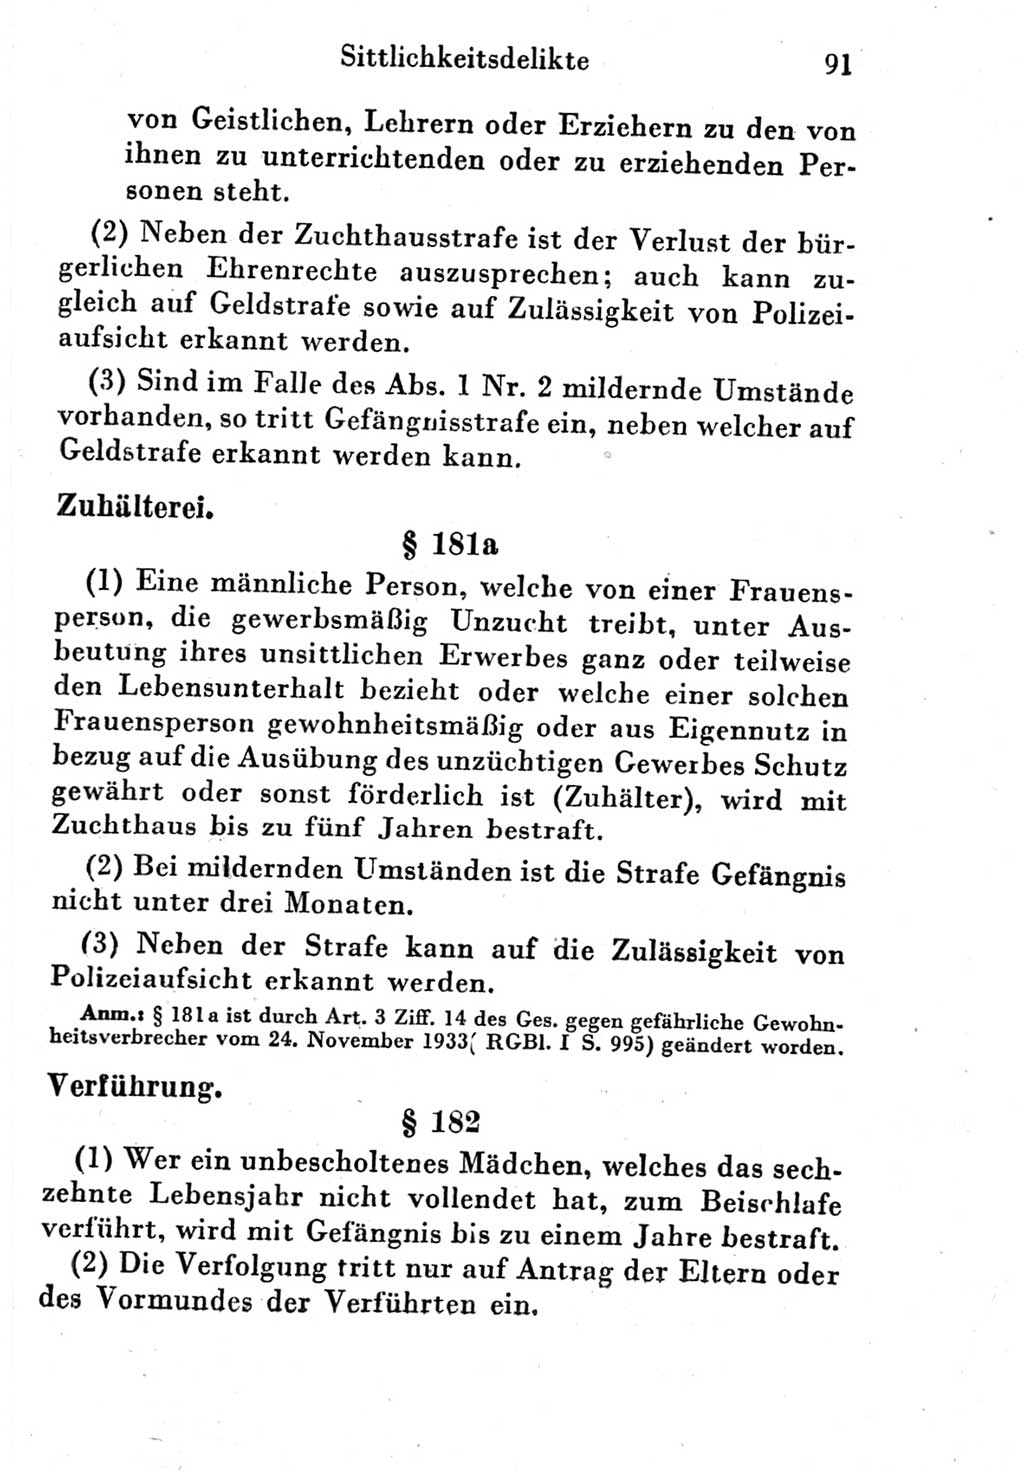 Strafgesetzbuch (StGB) und andere Strafgesetze [Deutsche Demokratische Republik (DDR)] 1951, Seite 91 (StGB Strafges. DDR 1951, S. 91)